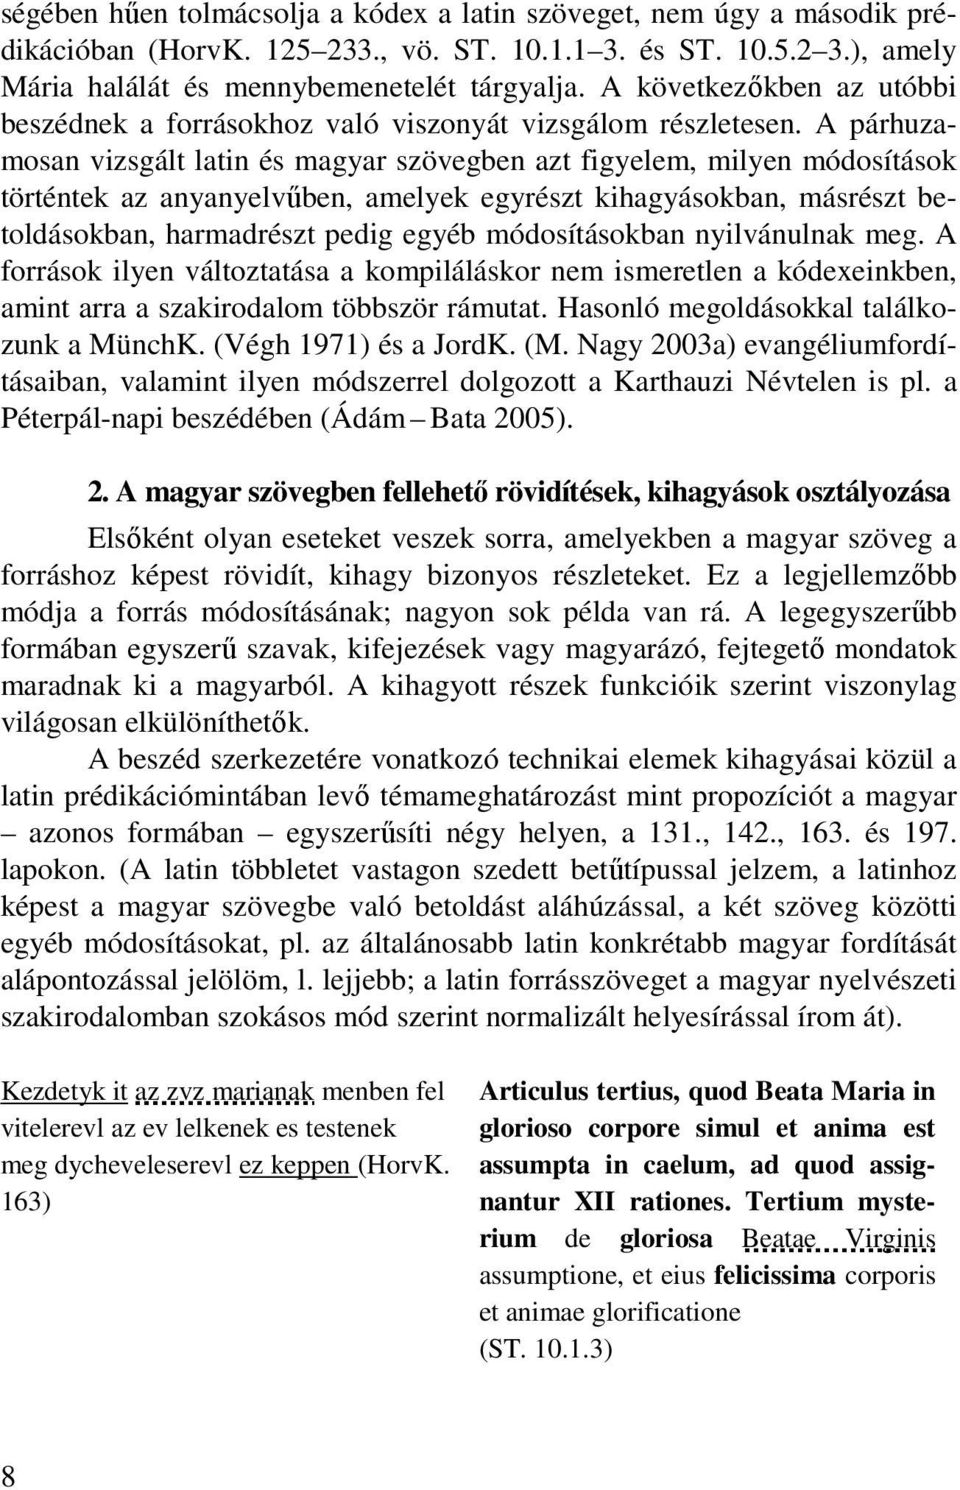 A párhuzamosan vizsgált latin és magyar szövegben azt figyelem, milyen módosítások történtek az anyanyelvűben, amelyek egyrészt kihagyásokban, másrészt betoldásokban, harmadrészt pedig egyéb